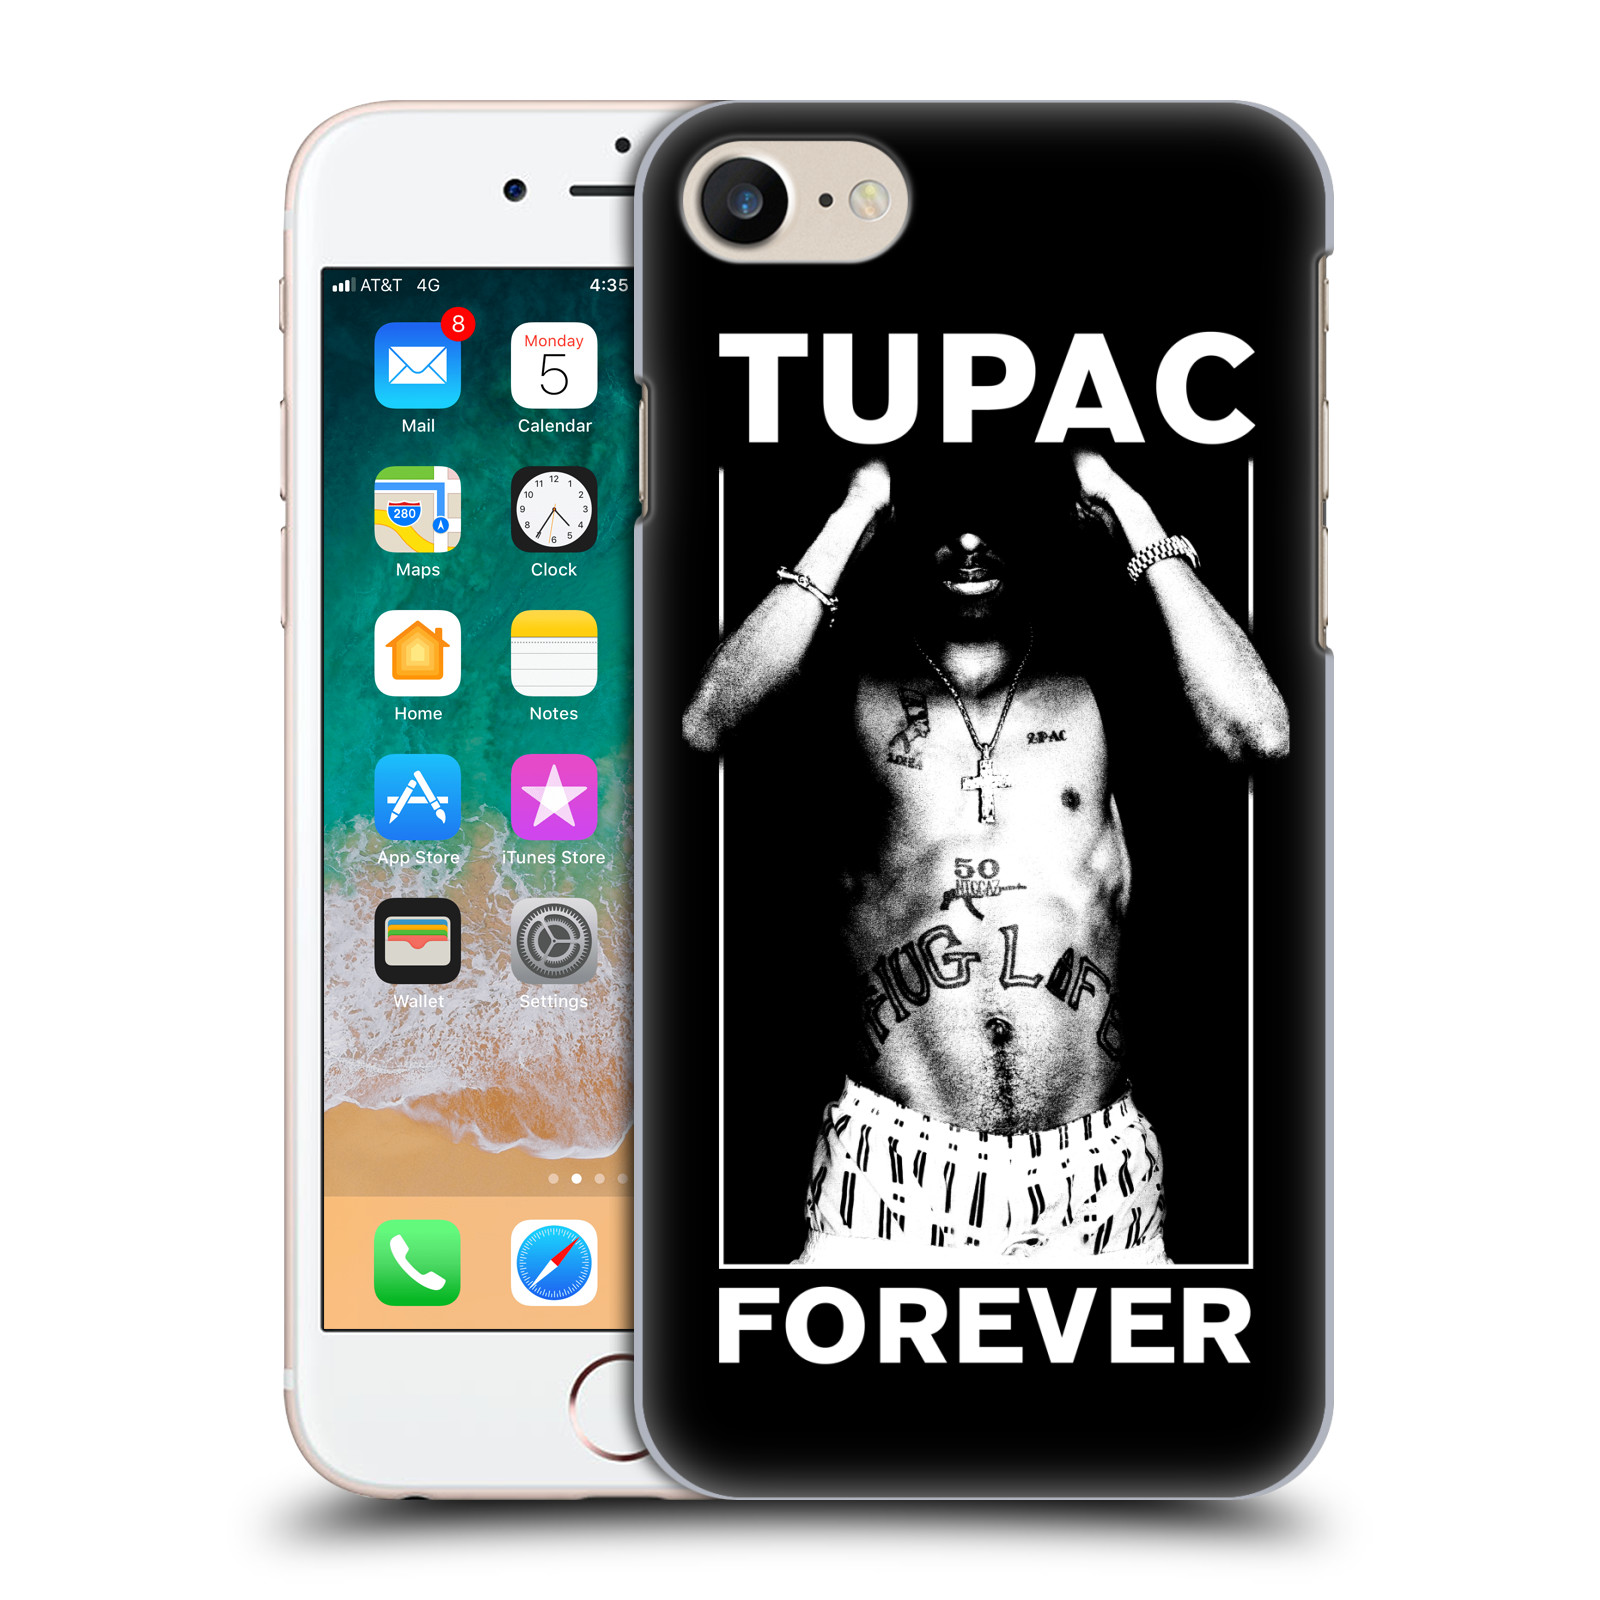 Plastové pouzdro pro mobil Apple Iphone 7/8/SE 2020 Zpěvák rapper Tupac Shakur 2Pac bílý popisek FOREVER